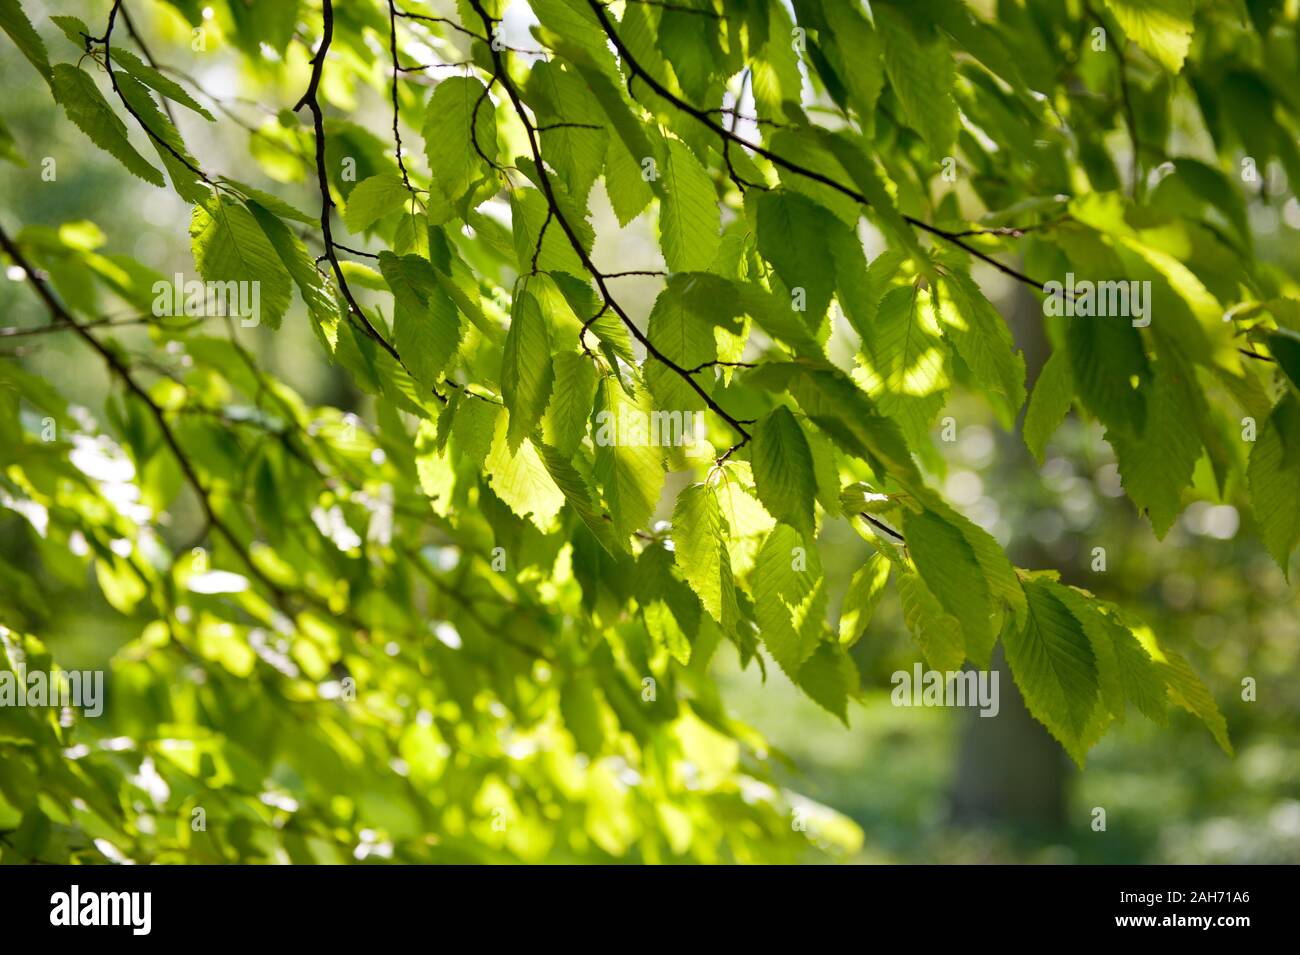 Elm joven frágil follaje verde fresco closeup, Ulmus hojas de ramitas en la luz solar, Árbol caducifolio de detalle, la naturaleza y la vegetación en primavera, día soleado. Foto de stock